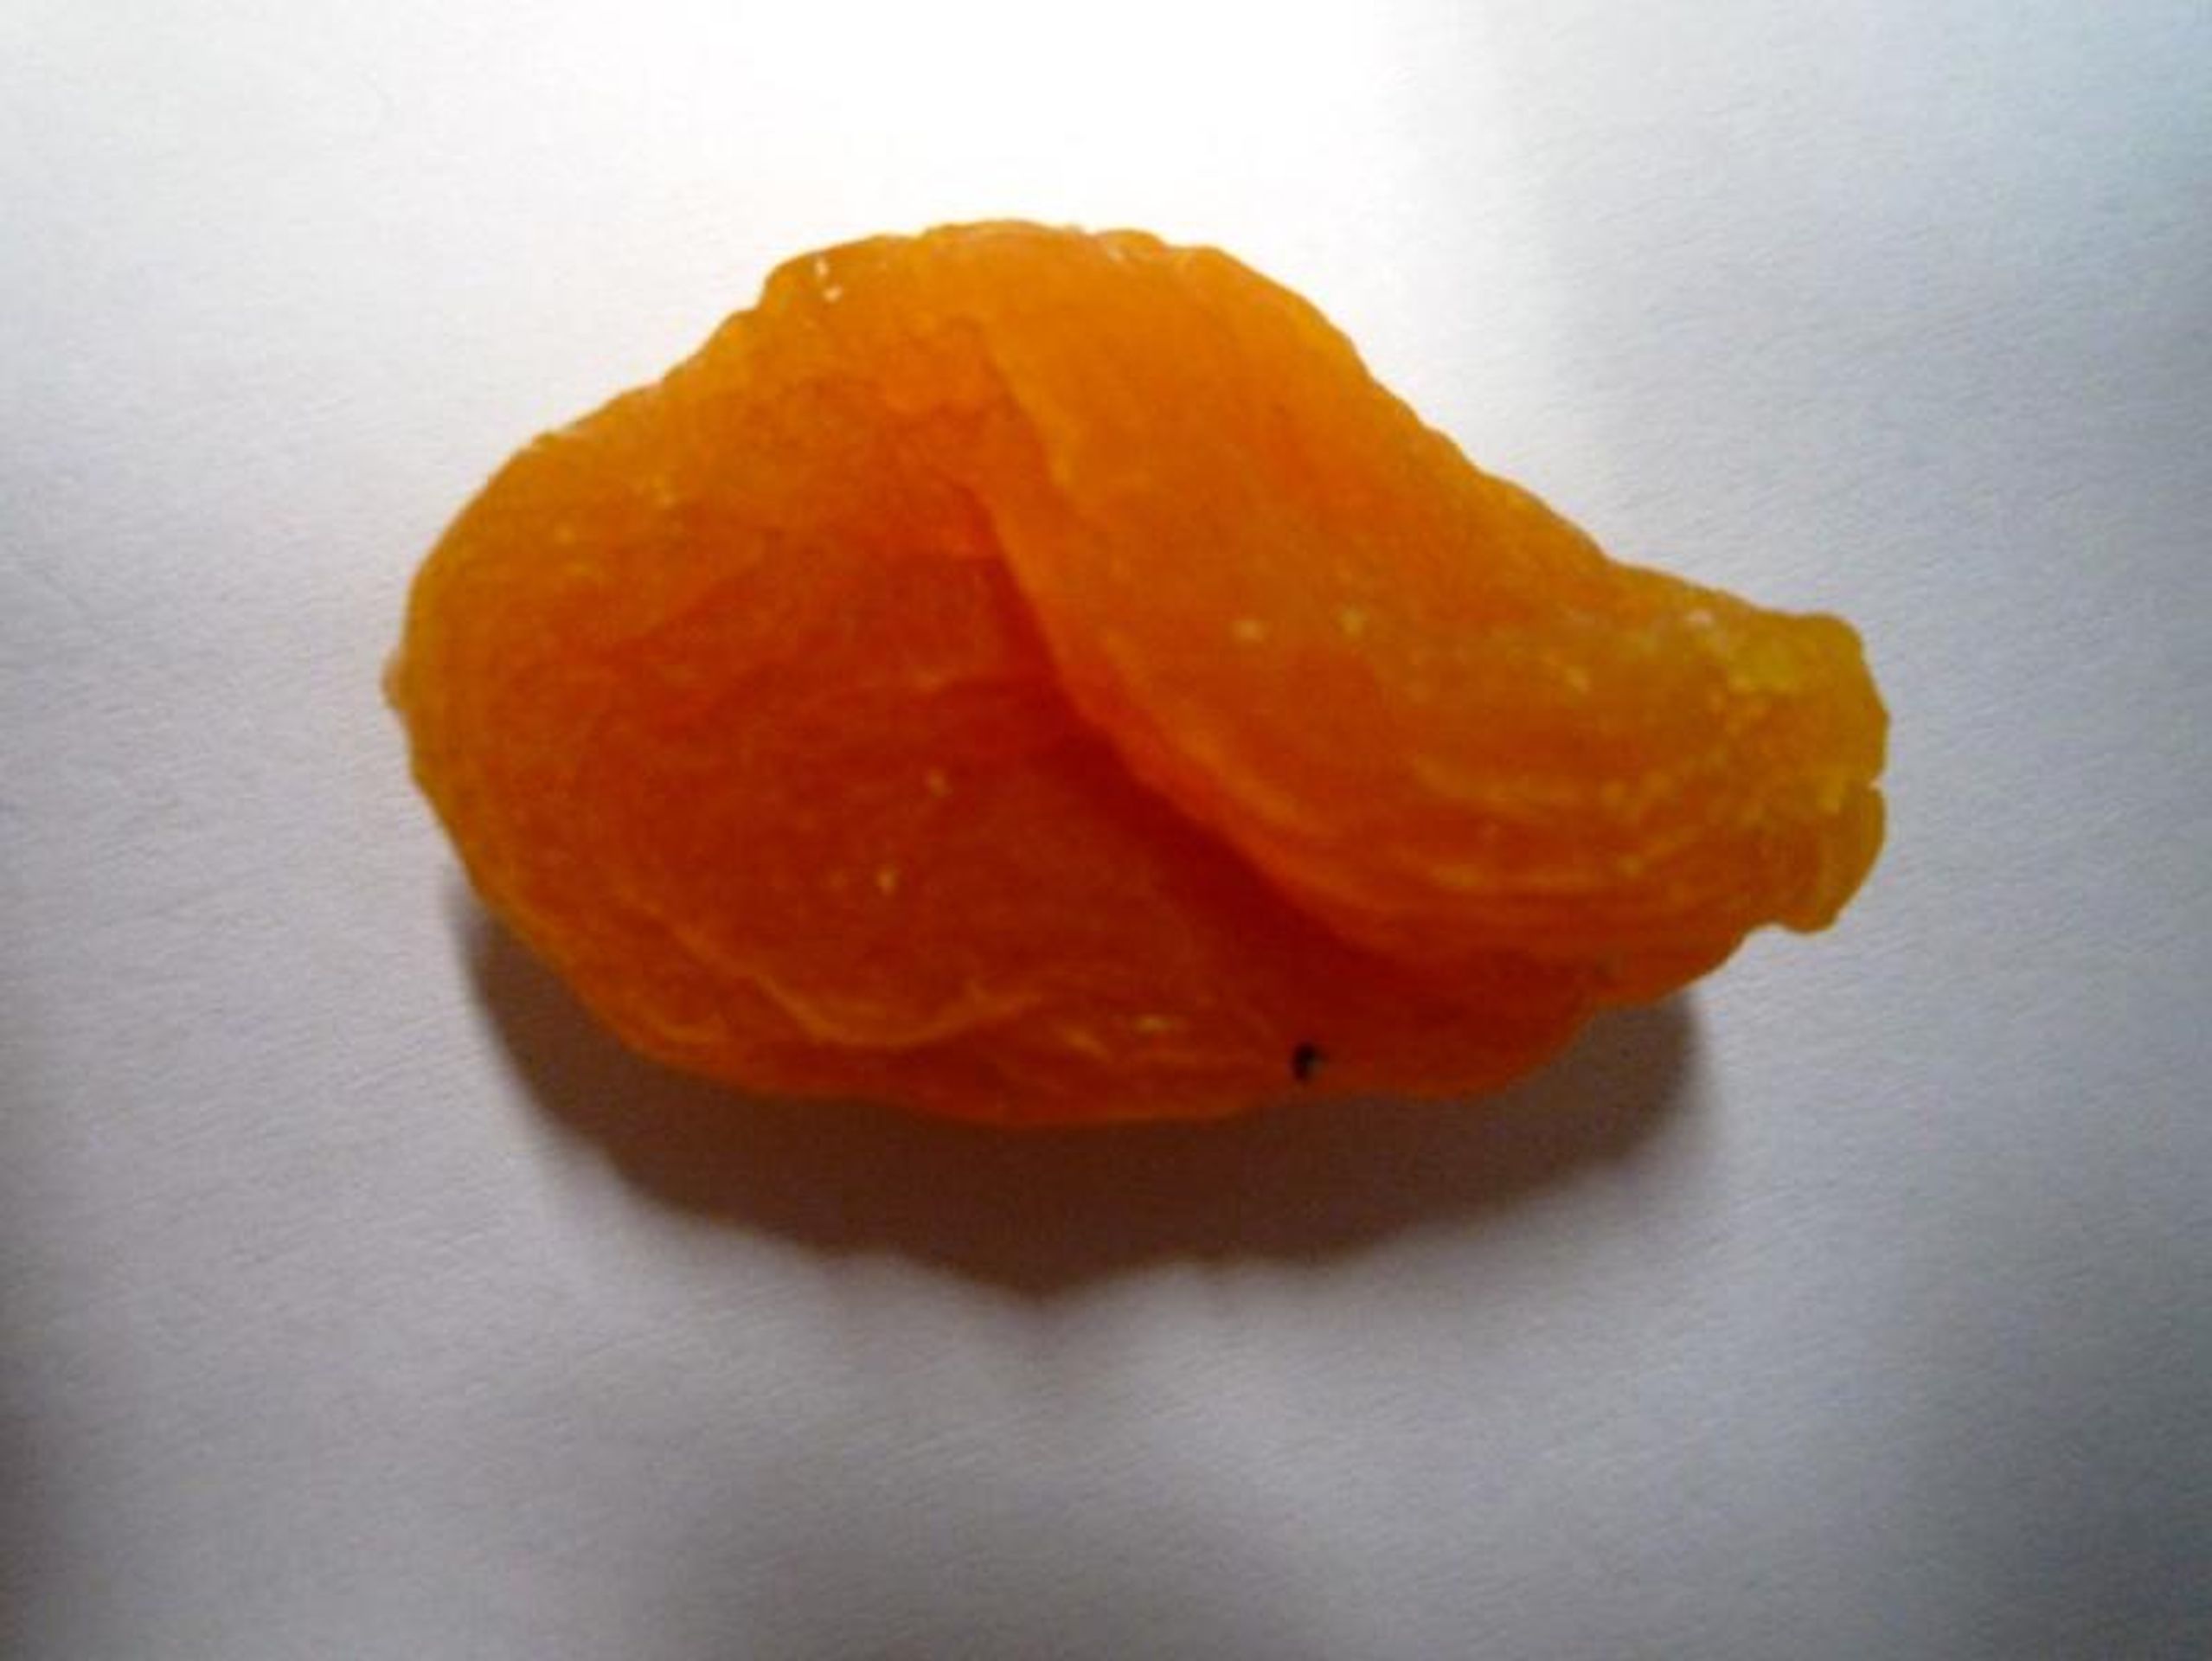 Sušené meruňky vypeckované - GALERIE: Nebezpečné "Potraviny na pranýři" (12/13)